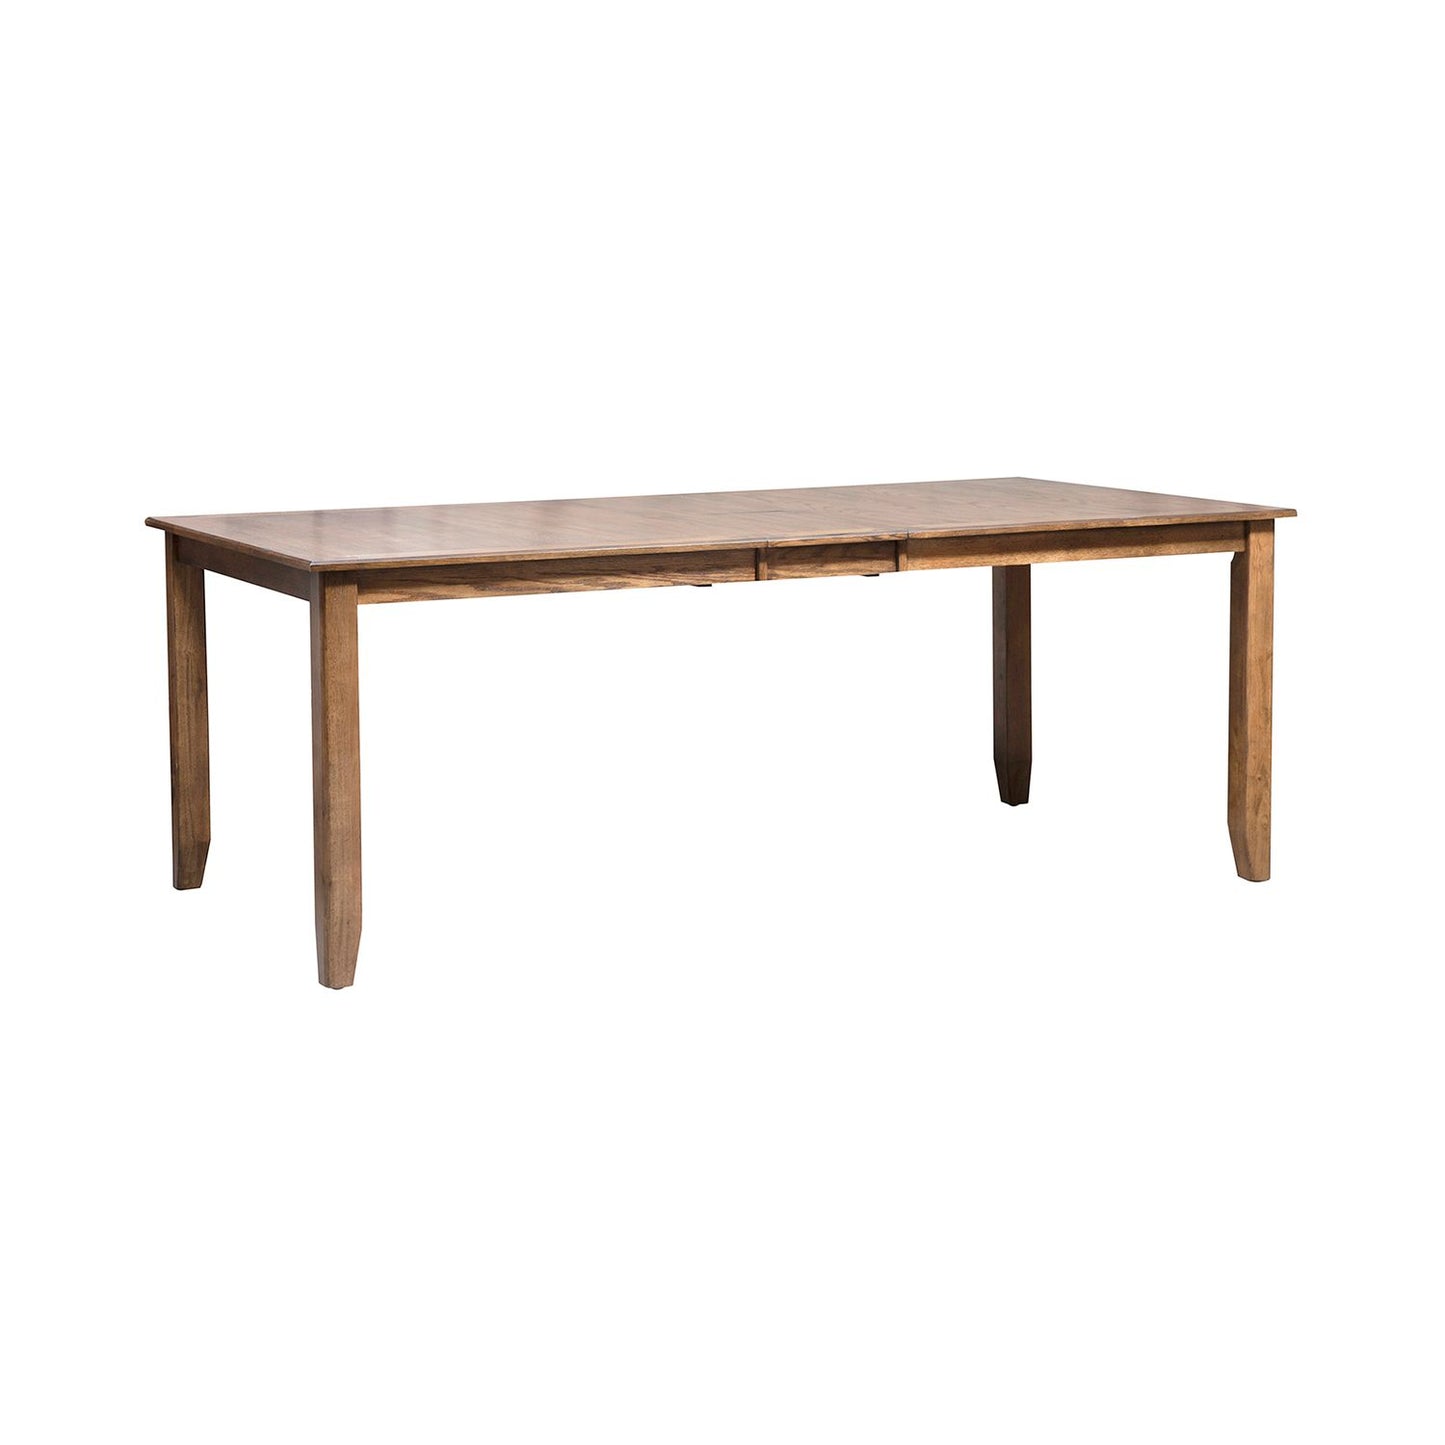 Santa Rosa - 6 Piece Rectangular Table Set